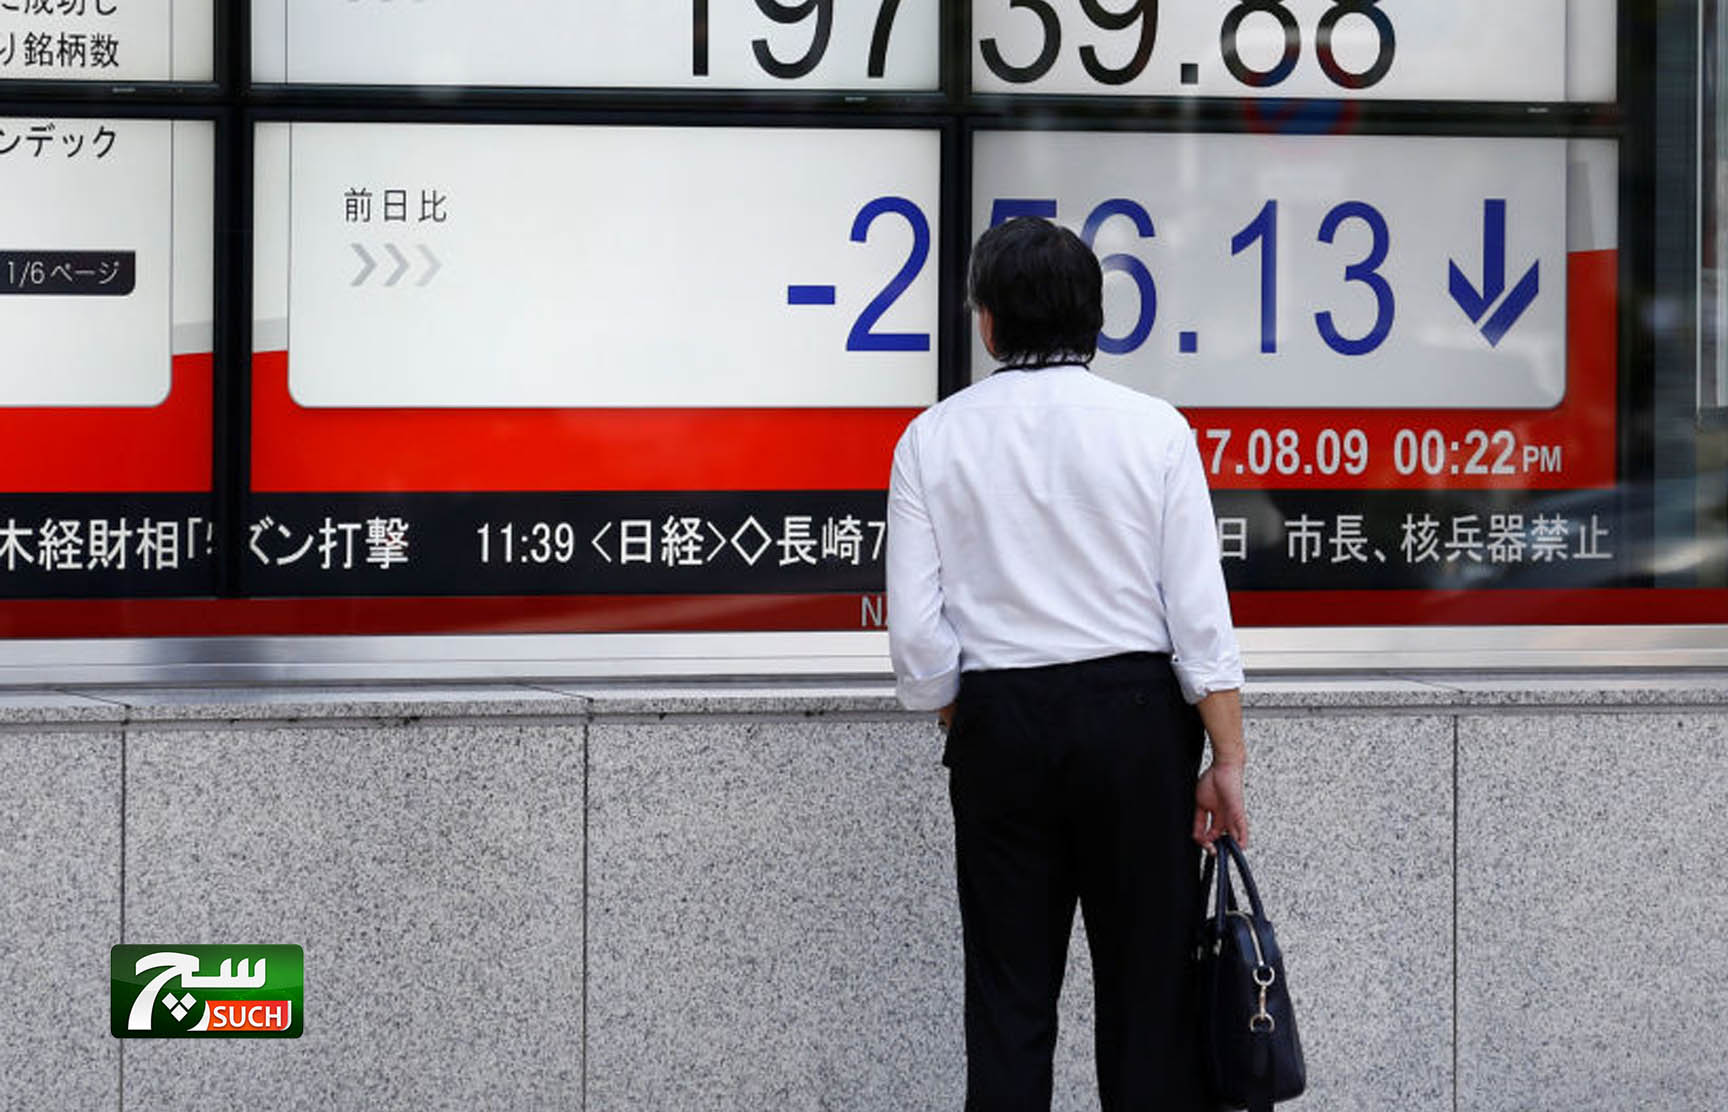 أسعار الجملة في اليابان تقفز لأرقام قياسية